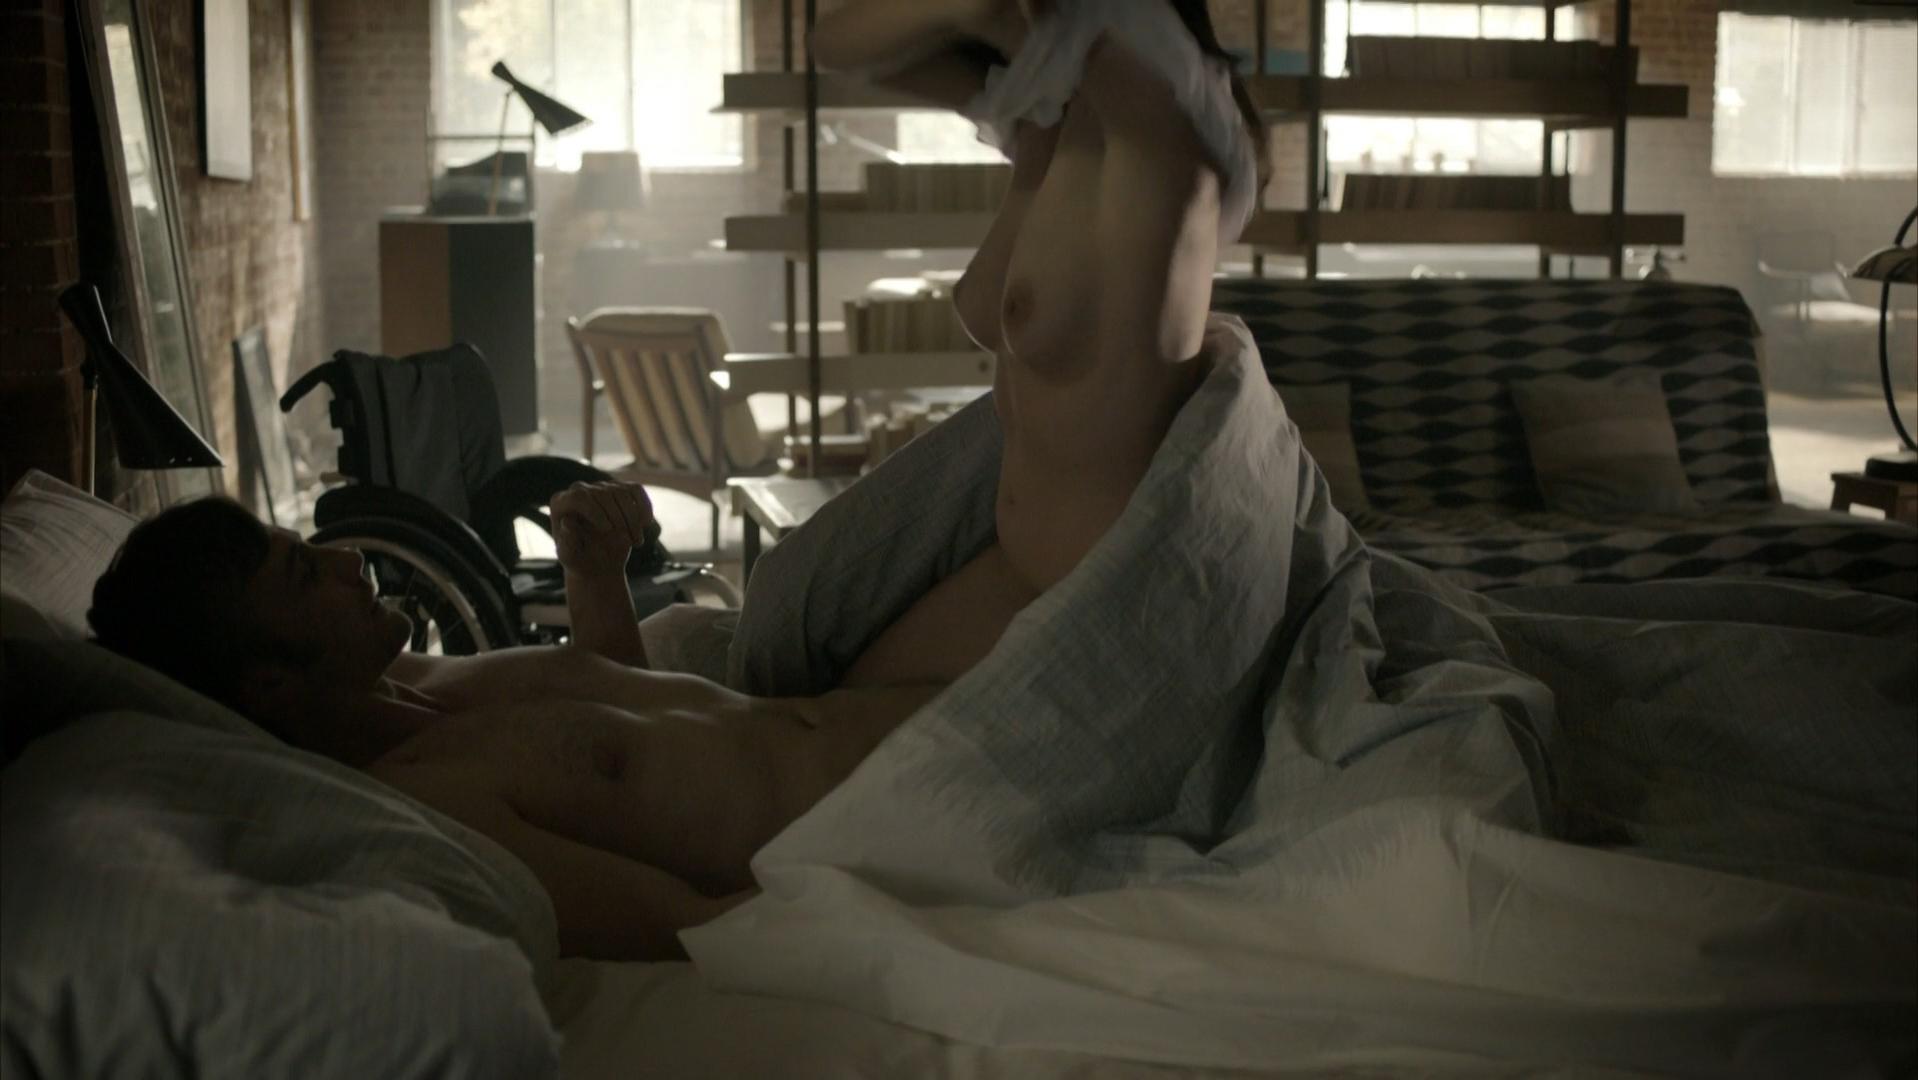 Nude Video Celebs Morven Christie Nude Hunted S01e08 2012